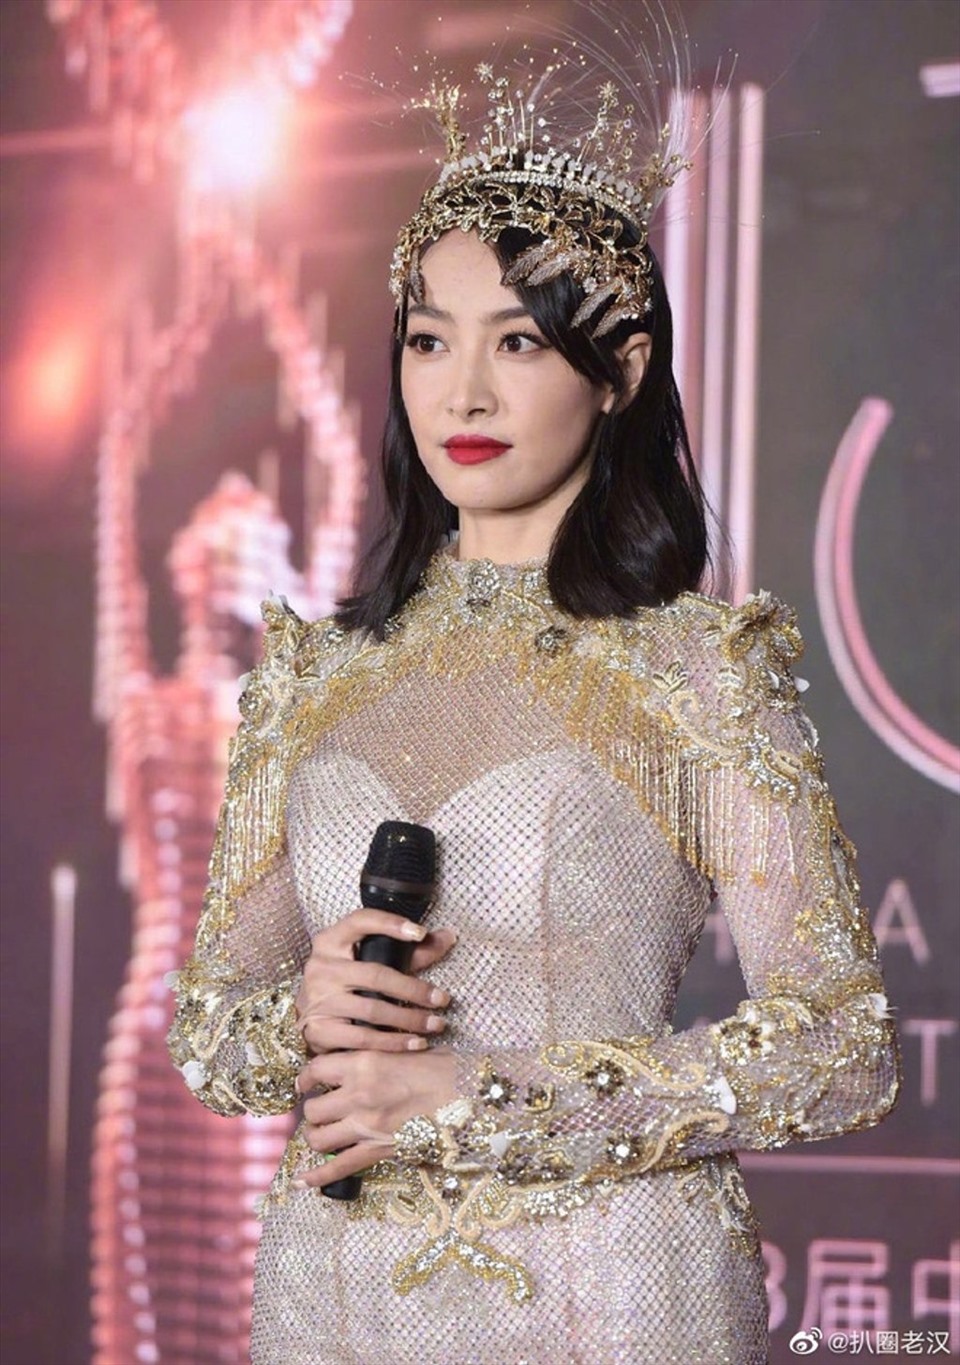 จนถึงปัจจุบัน Tong Thien เป็นชื่อที่มีชื่อเสียงใน C-biz  นักแสดงเป็นที่รักของการแสดง บางครั้งเธอก็กลับมาเป็นนักร้องในรายการวาไรตี้บางรายการ  ภาพถ่าย: “Xinhua .”